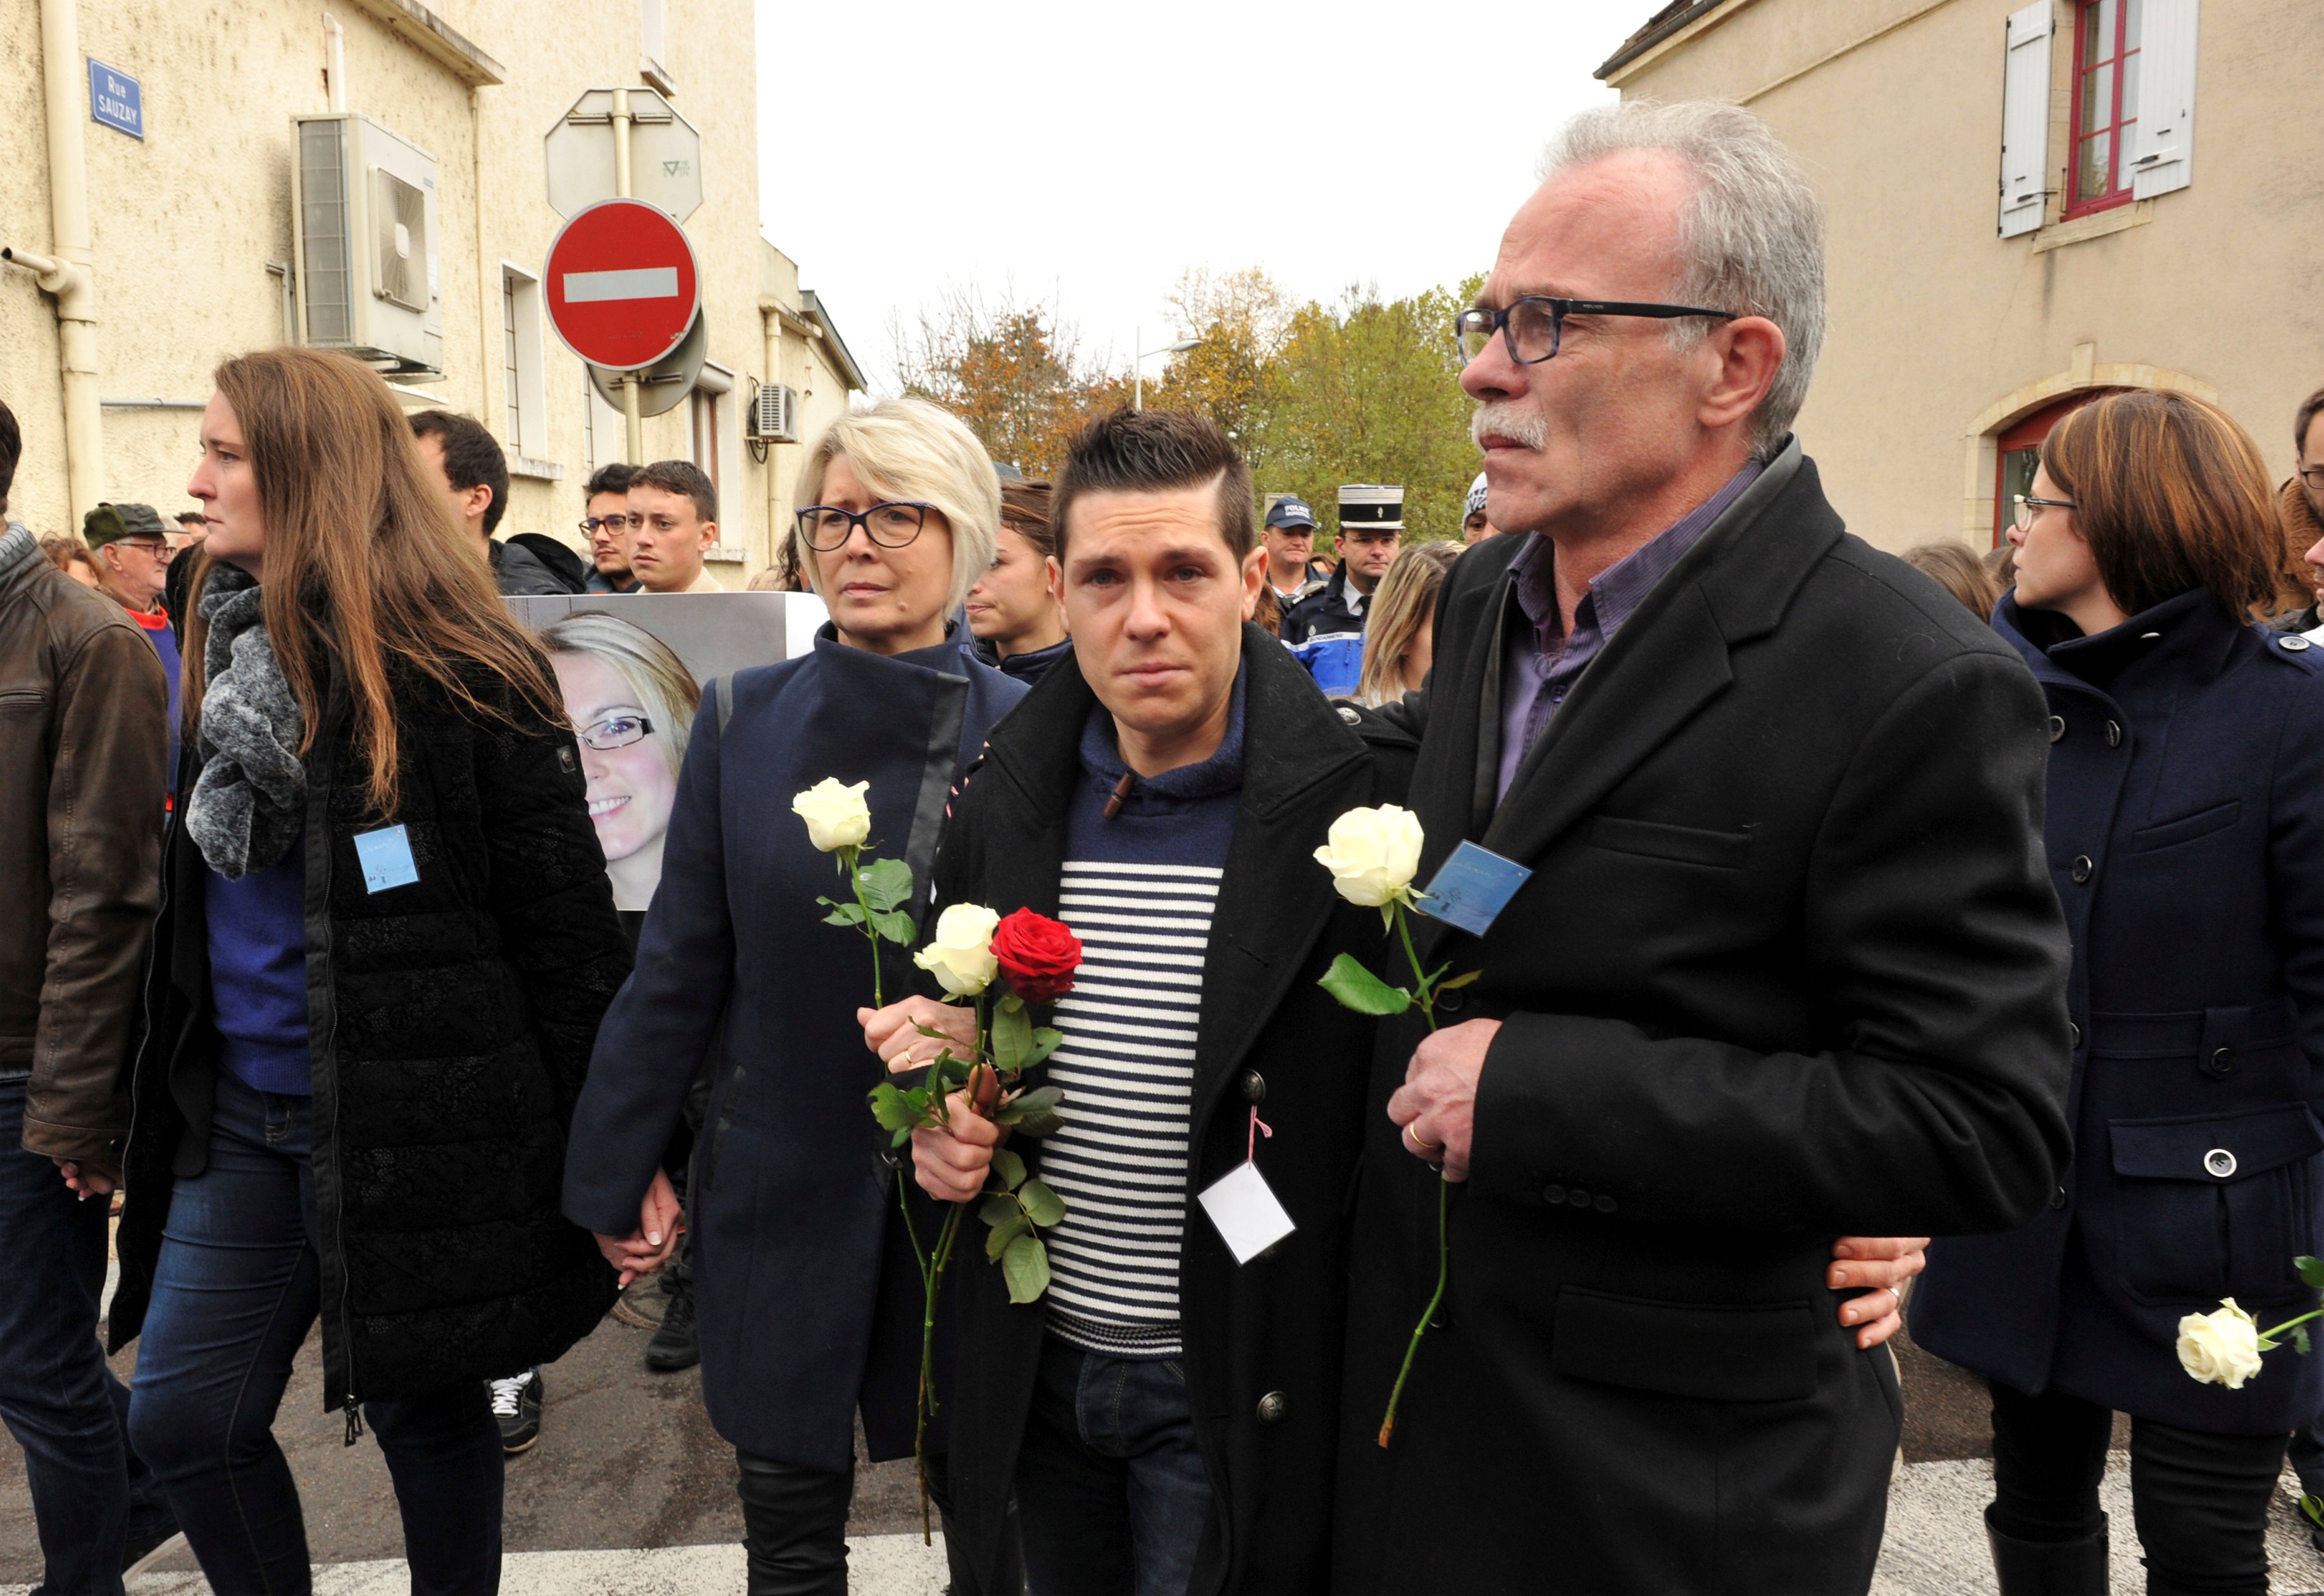 Isabelle Fouillot (L) et Jean-Pierre Fouillot (R), les parents de la Française assassinée Alexia Daval, et son mari JonathanN Daval (C) mènent une marche silencieuse à la mémoire d'Alexia à Gray le 5 novembre 2017. | Photo : Getty Images